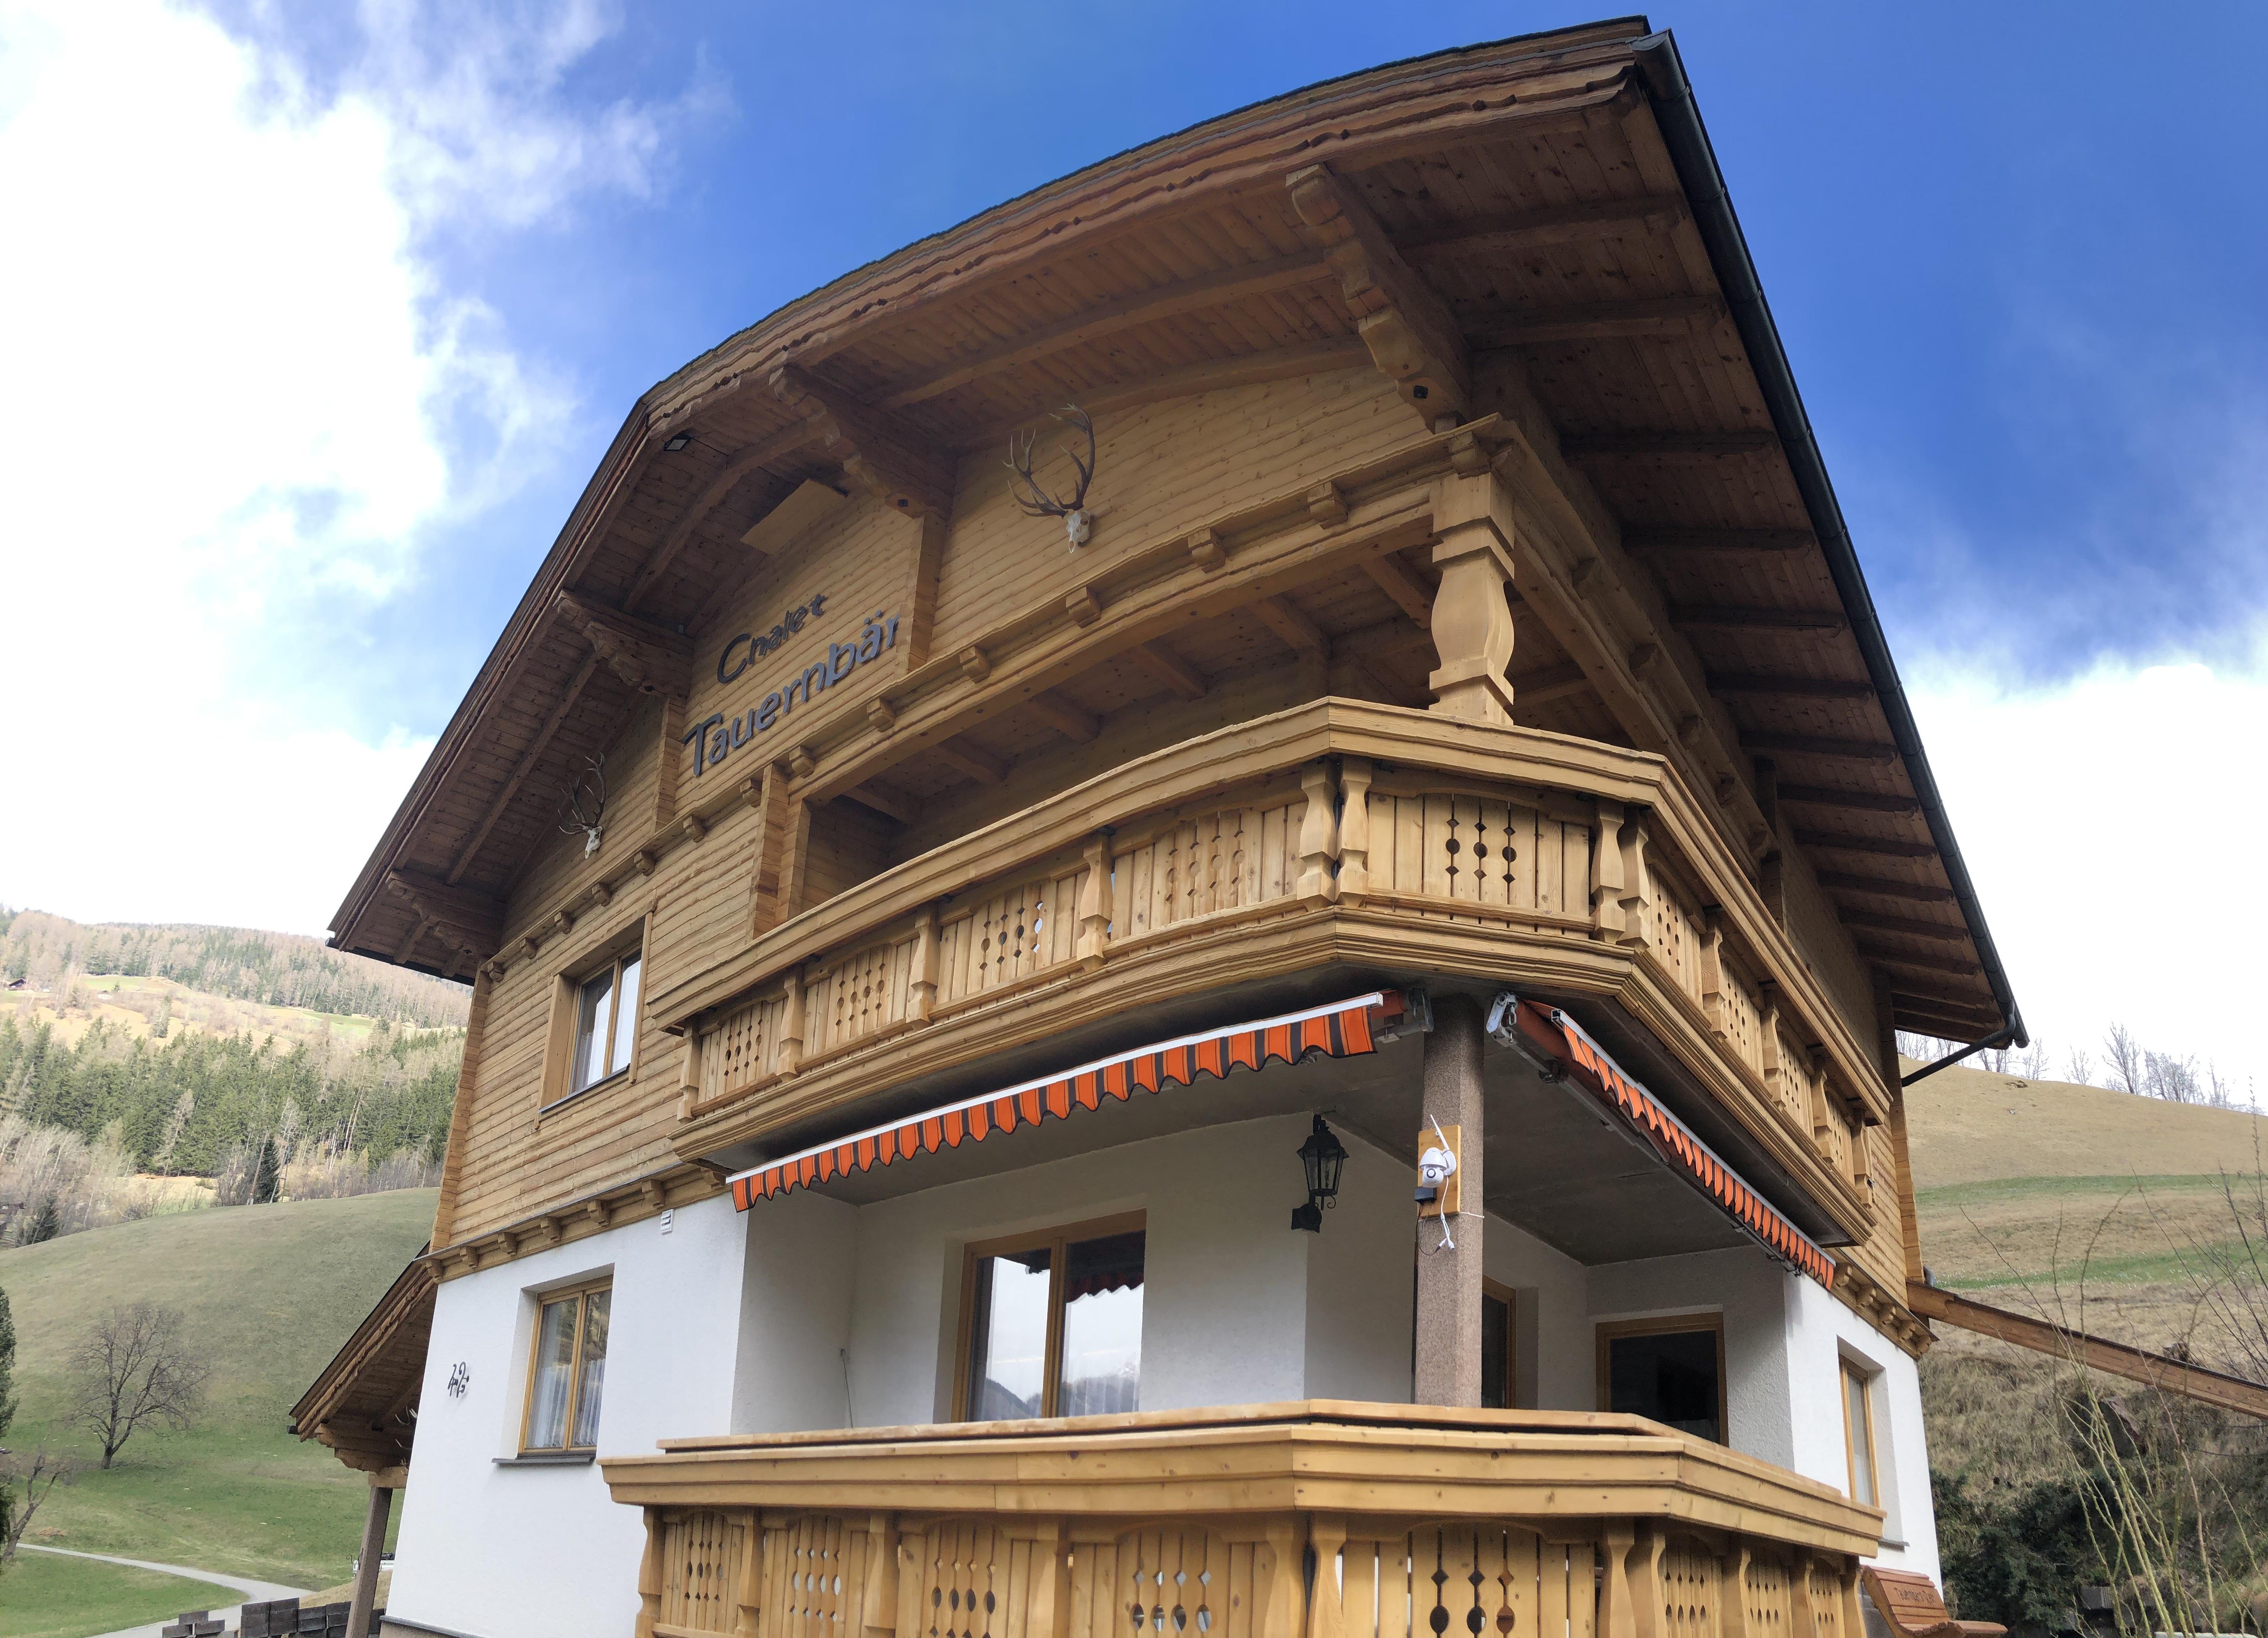 Chalet Tauernbär Ferienhaus, Dusche und Bad,  Ferienhaus in Österreich